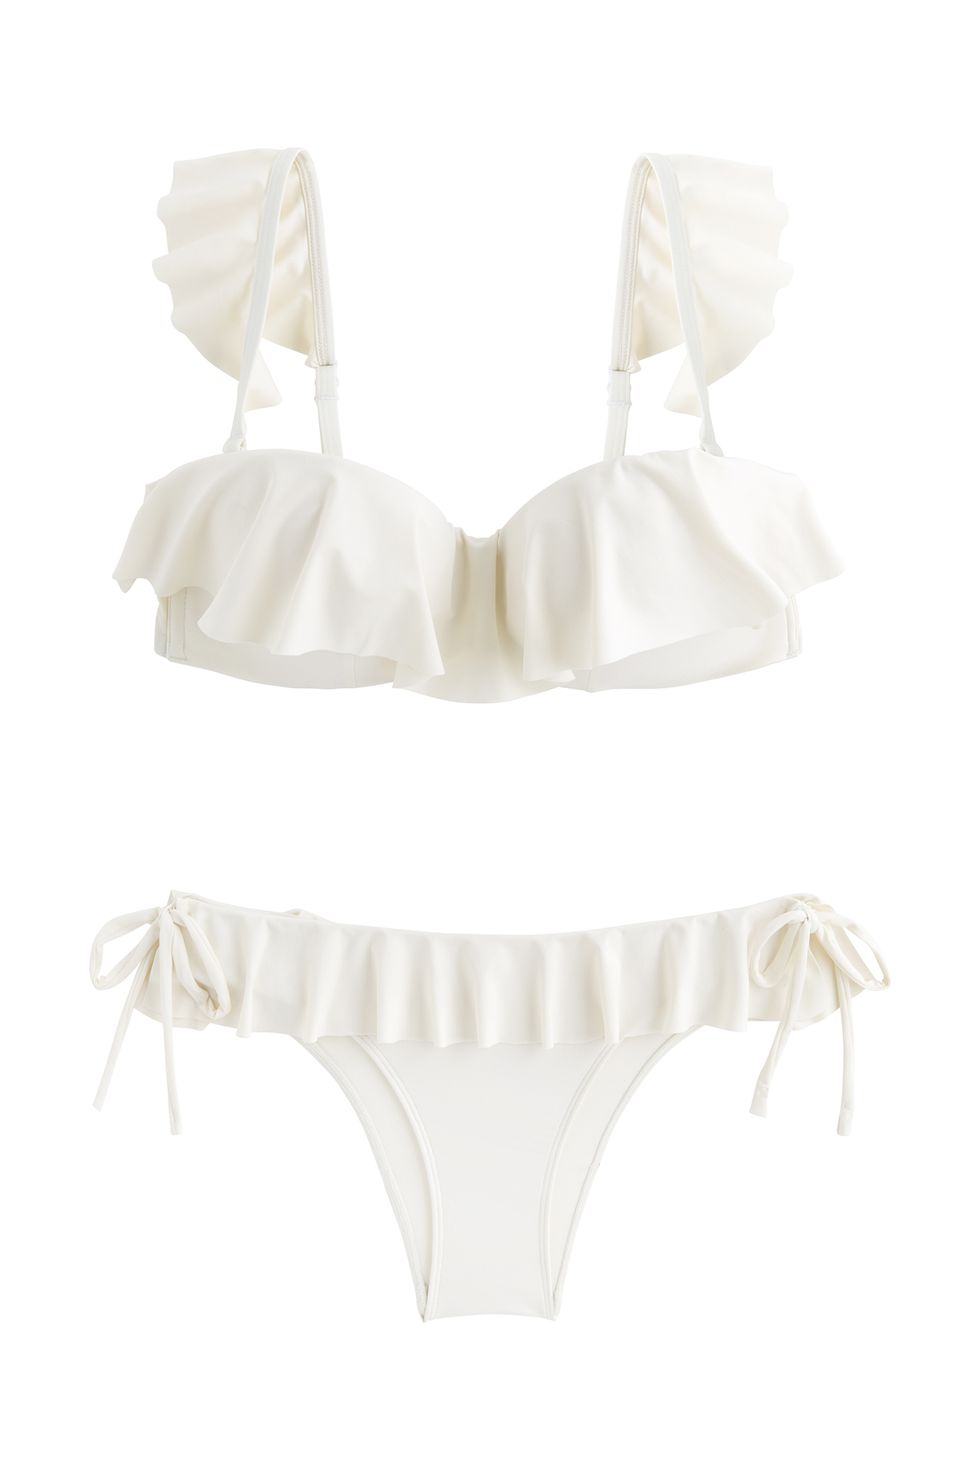 White, Clothing, Bikini, Product, Swimwear, Lingerie, Swimsuit bottom, Undergarment, Lingerie top, Brassiere, 